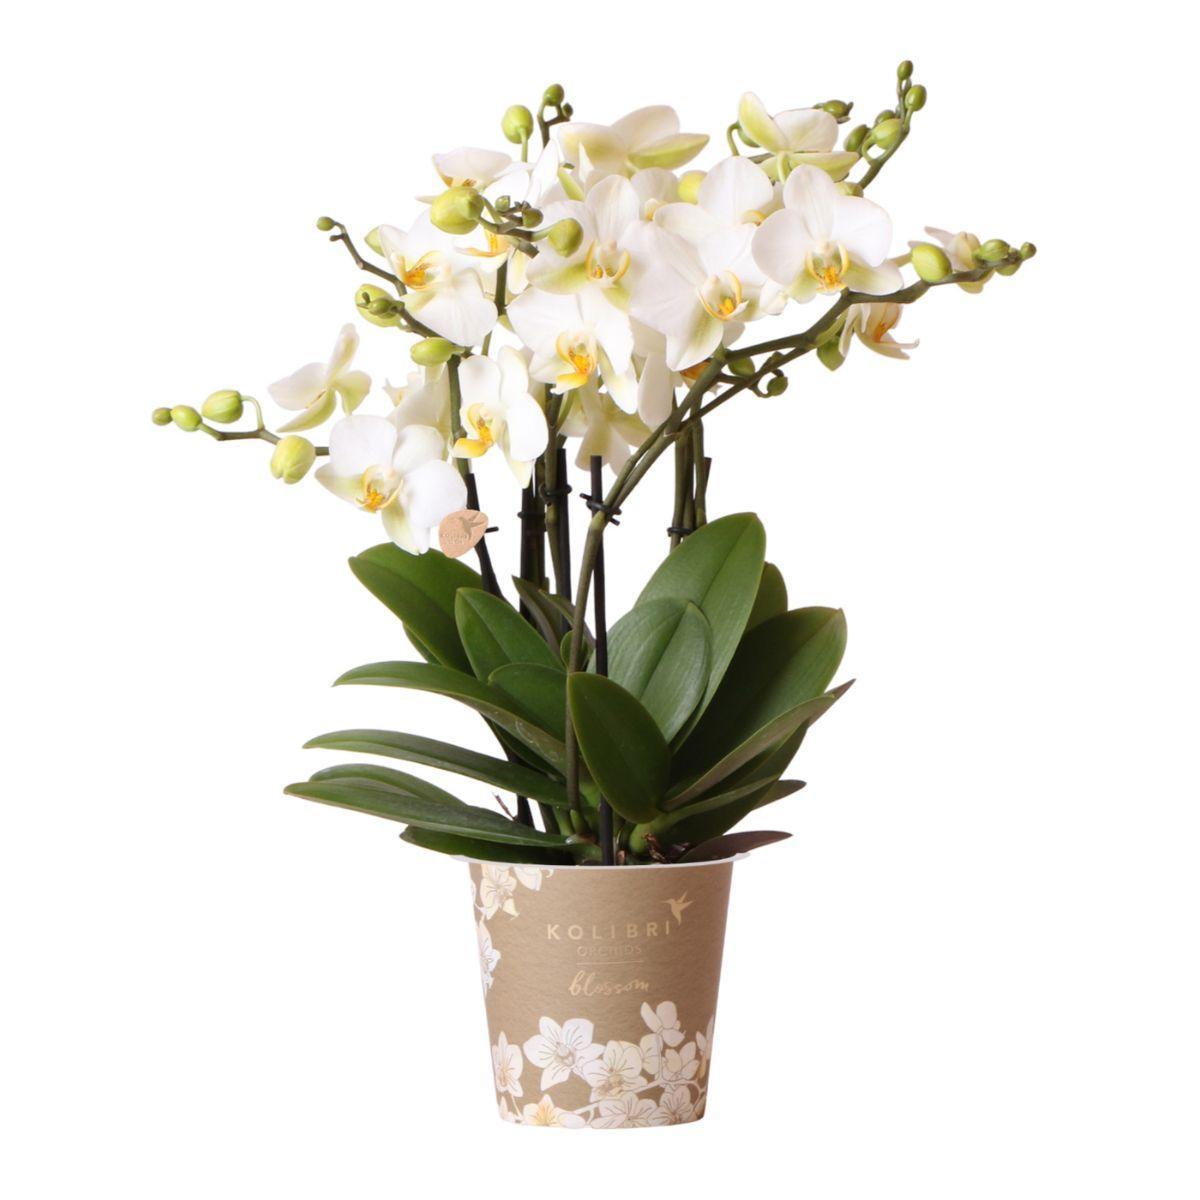 Kolibri Orchids | witte Phalaenopsis orchidee - Lausanne- potmaat Ø12cm | bloeiende kamerplant - vers van de kweker Kolibri Orchids | witte Phalaenopsis orchidee - Lausanne- potmaat Ø12cm | bloeiende kamerplant - vers van de kweker